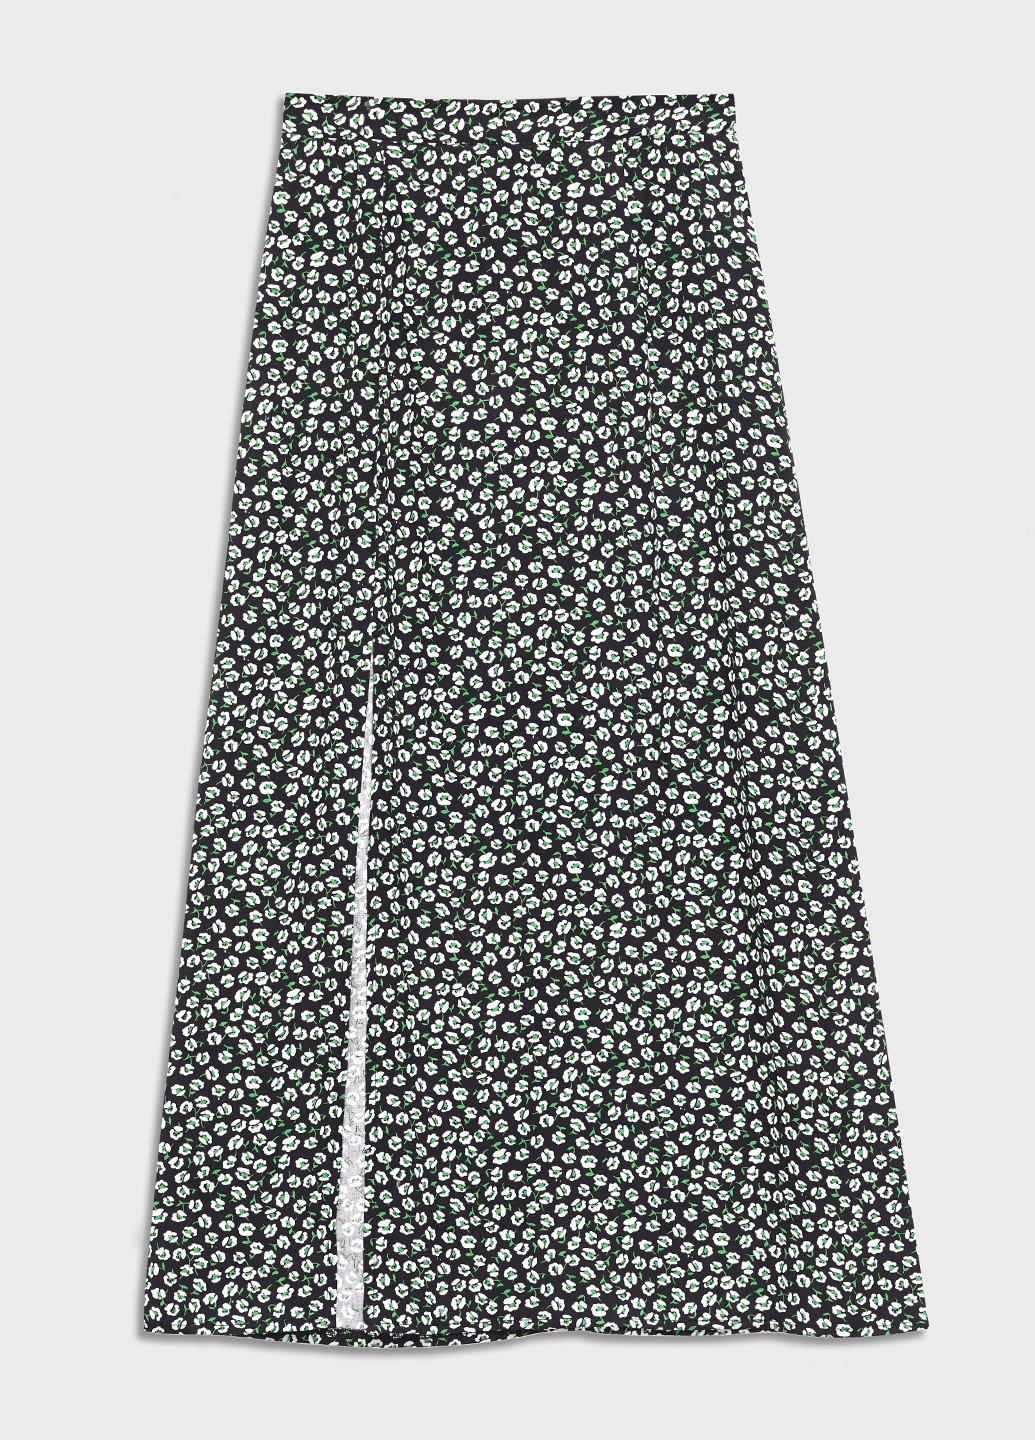 Черная кэжуал цветочной расцветки юбка KASTA design а-силуэта (трапеция)